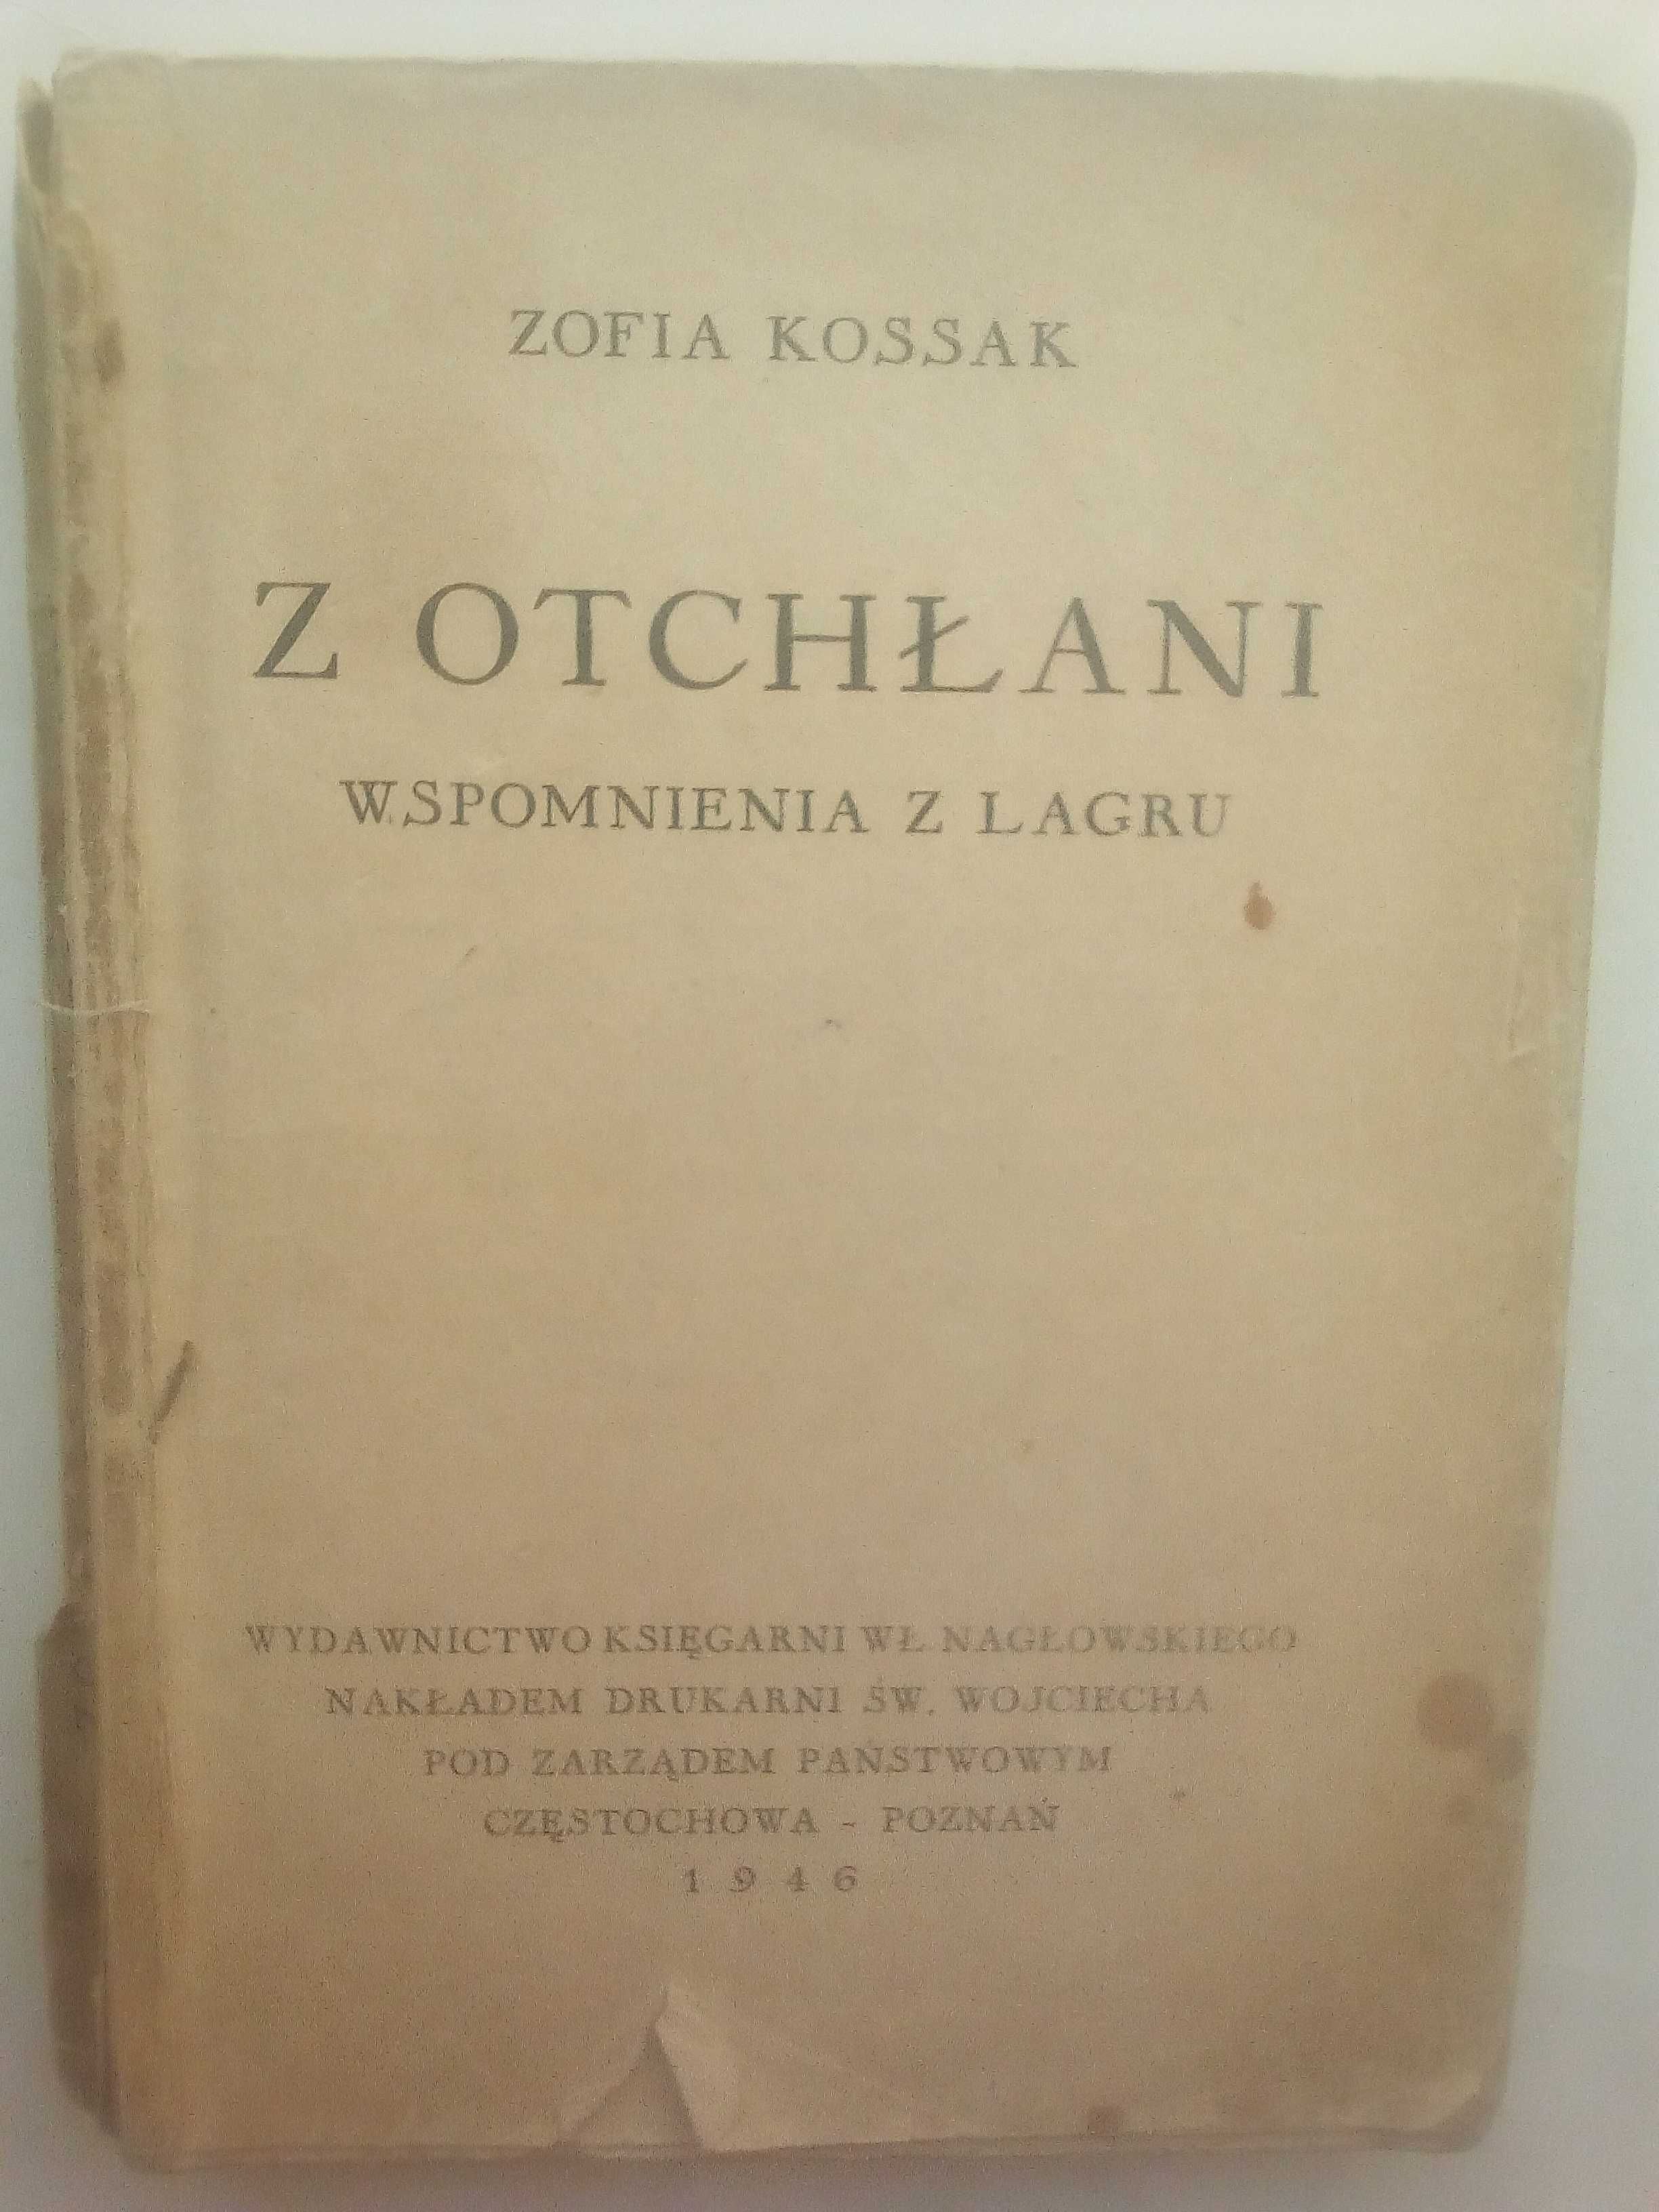 Z otchłani. Wspomnienia z lagru, Zofia Kossak (św. Wojciech 1946)